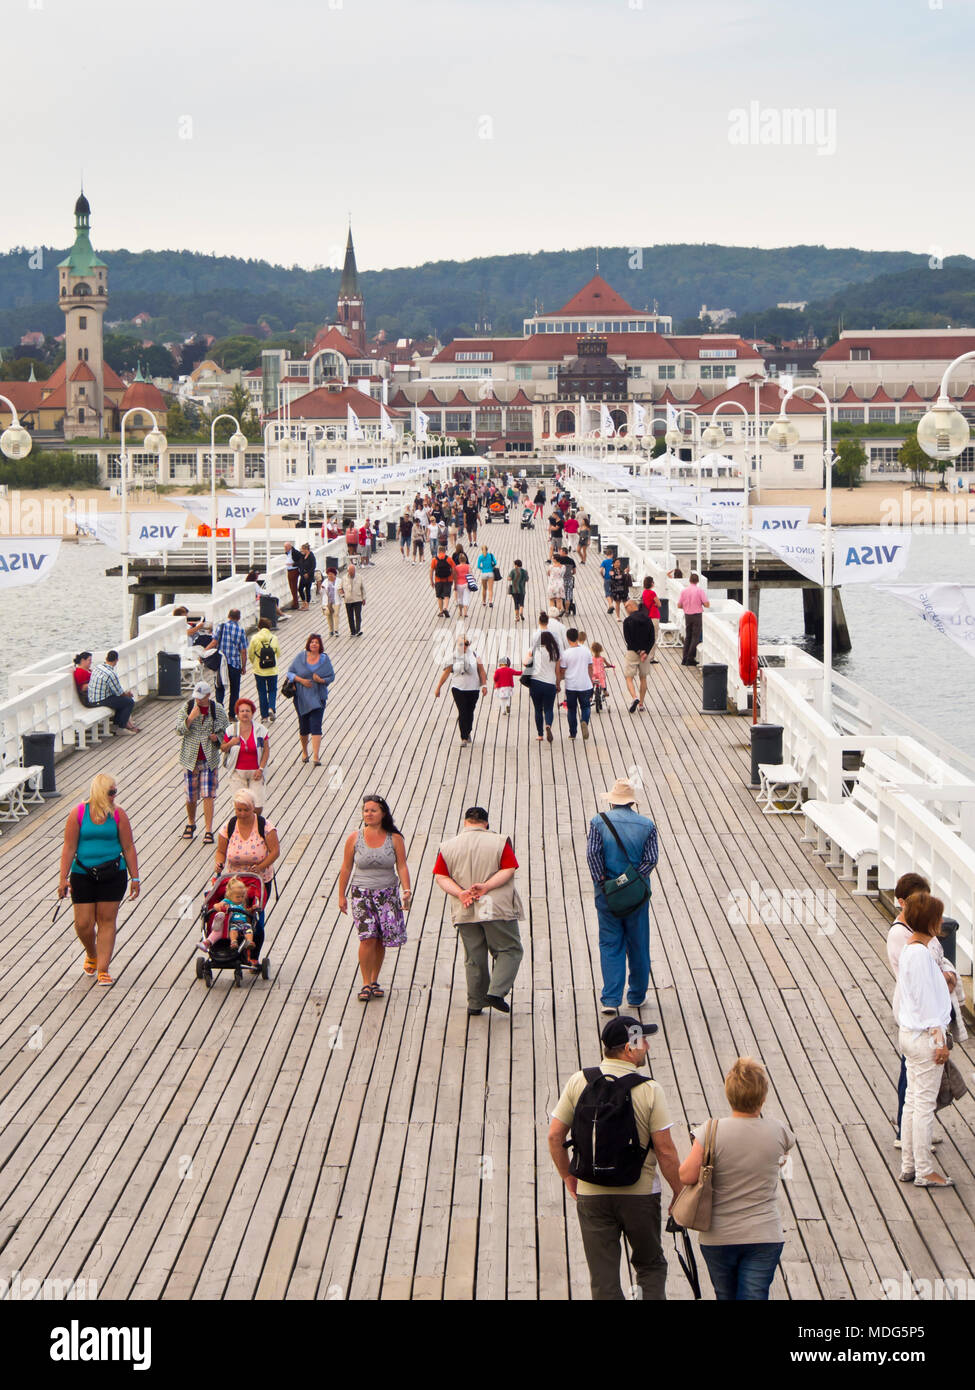 La plus longue jetée en bois d'Europe, avec des plages de sable de chaque côté dans la station estivale ville de Sopot Pologne près de Gdansk sur la côte de la mer Baltique Banque D'Images